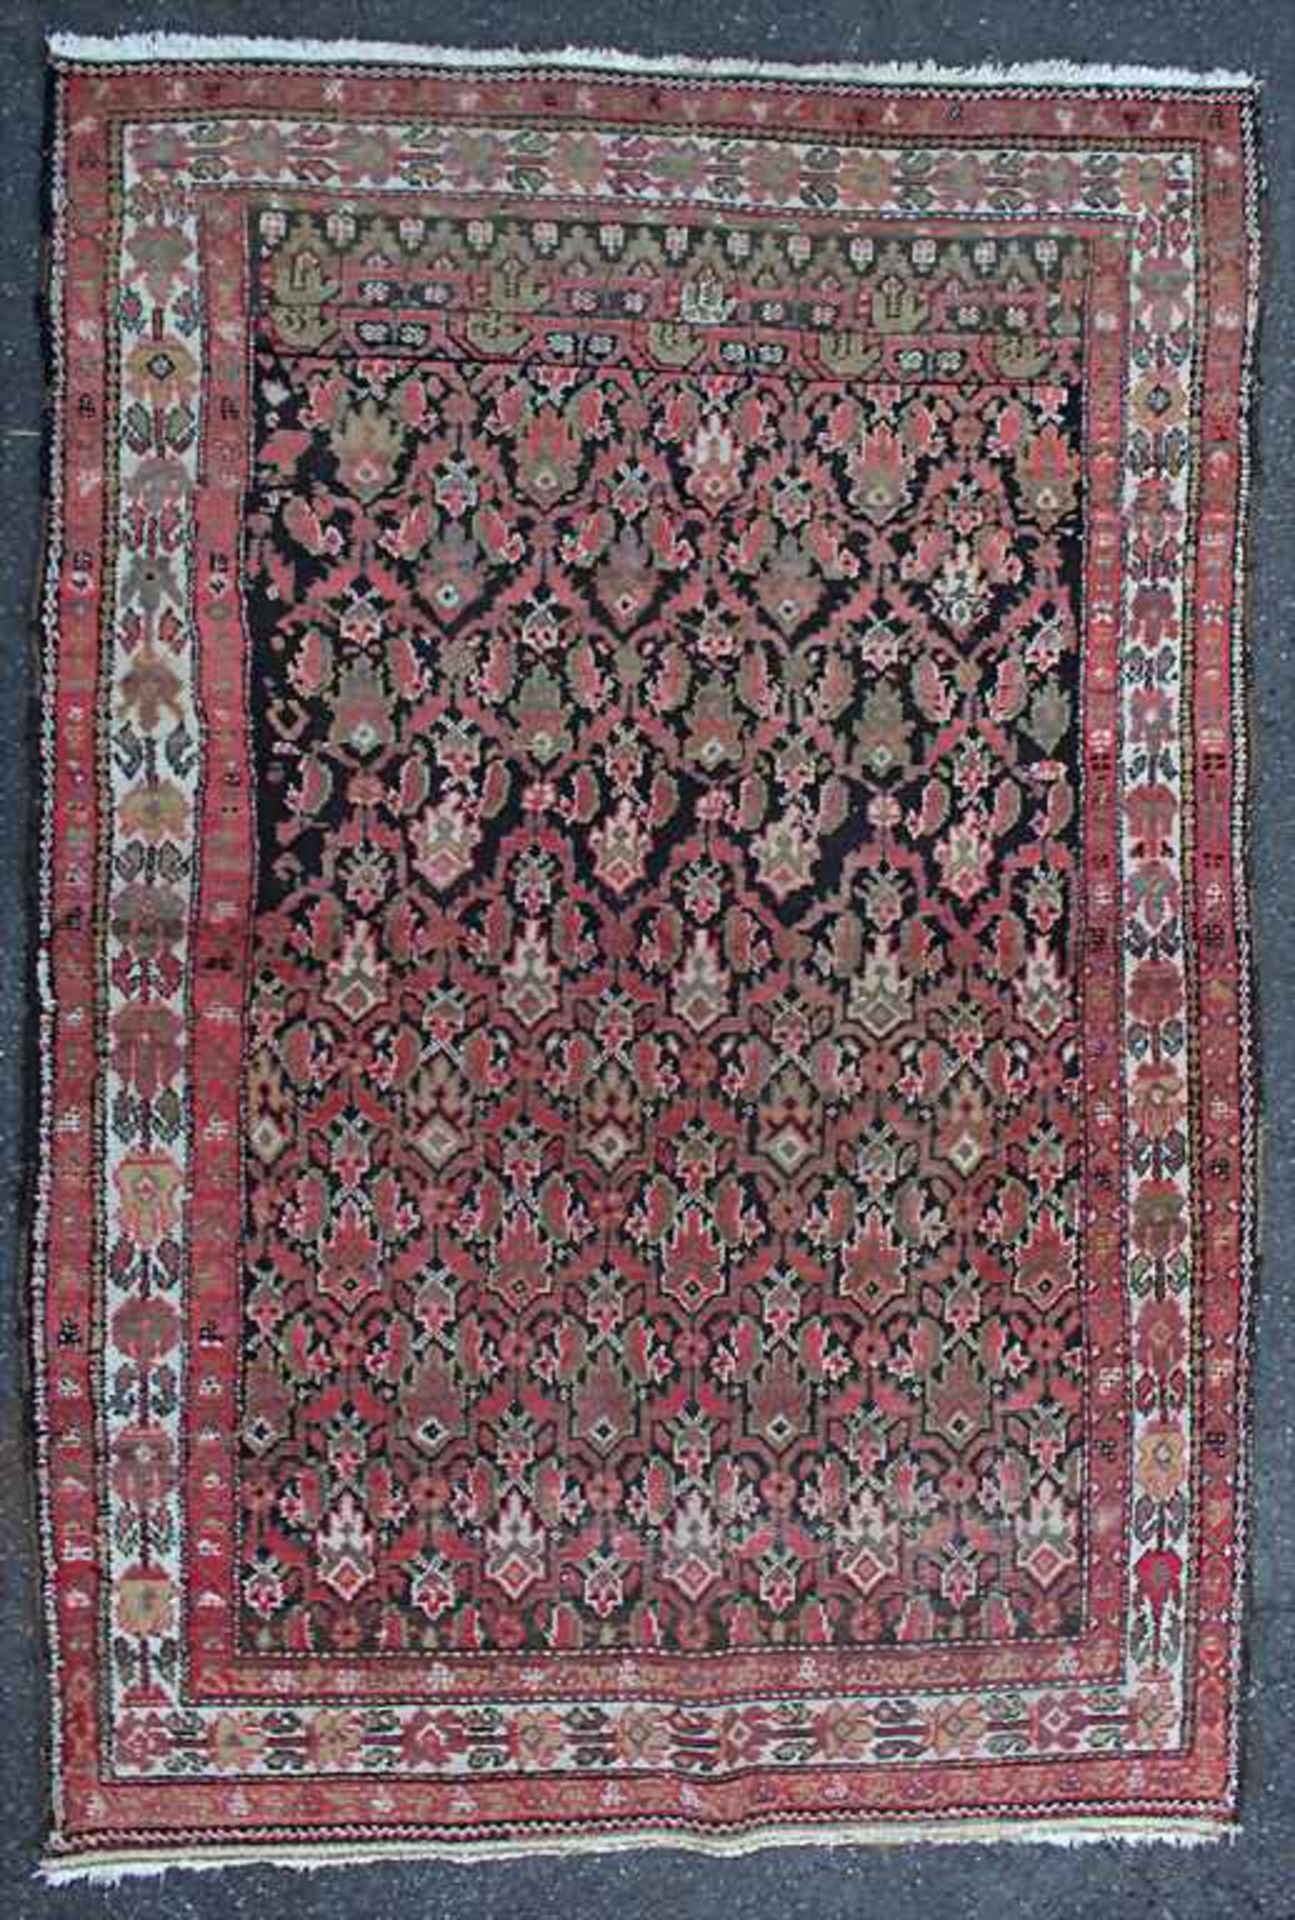 Orientteppich / An oriental carpetMaterial: Wolle auf Wolle, Maße: 192 x 132 cm, Zustand: partiell